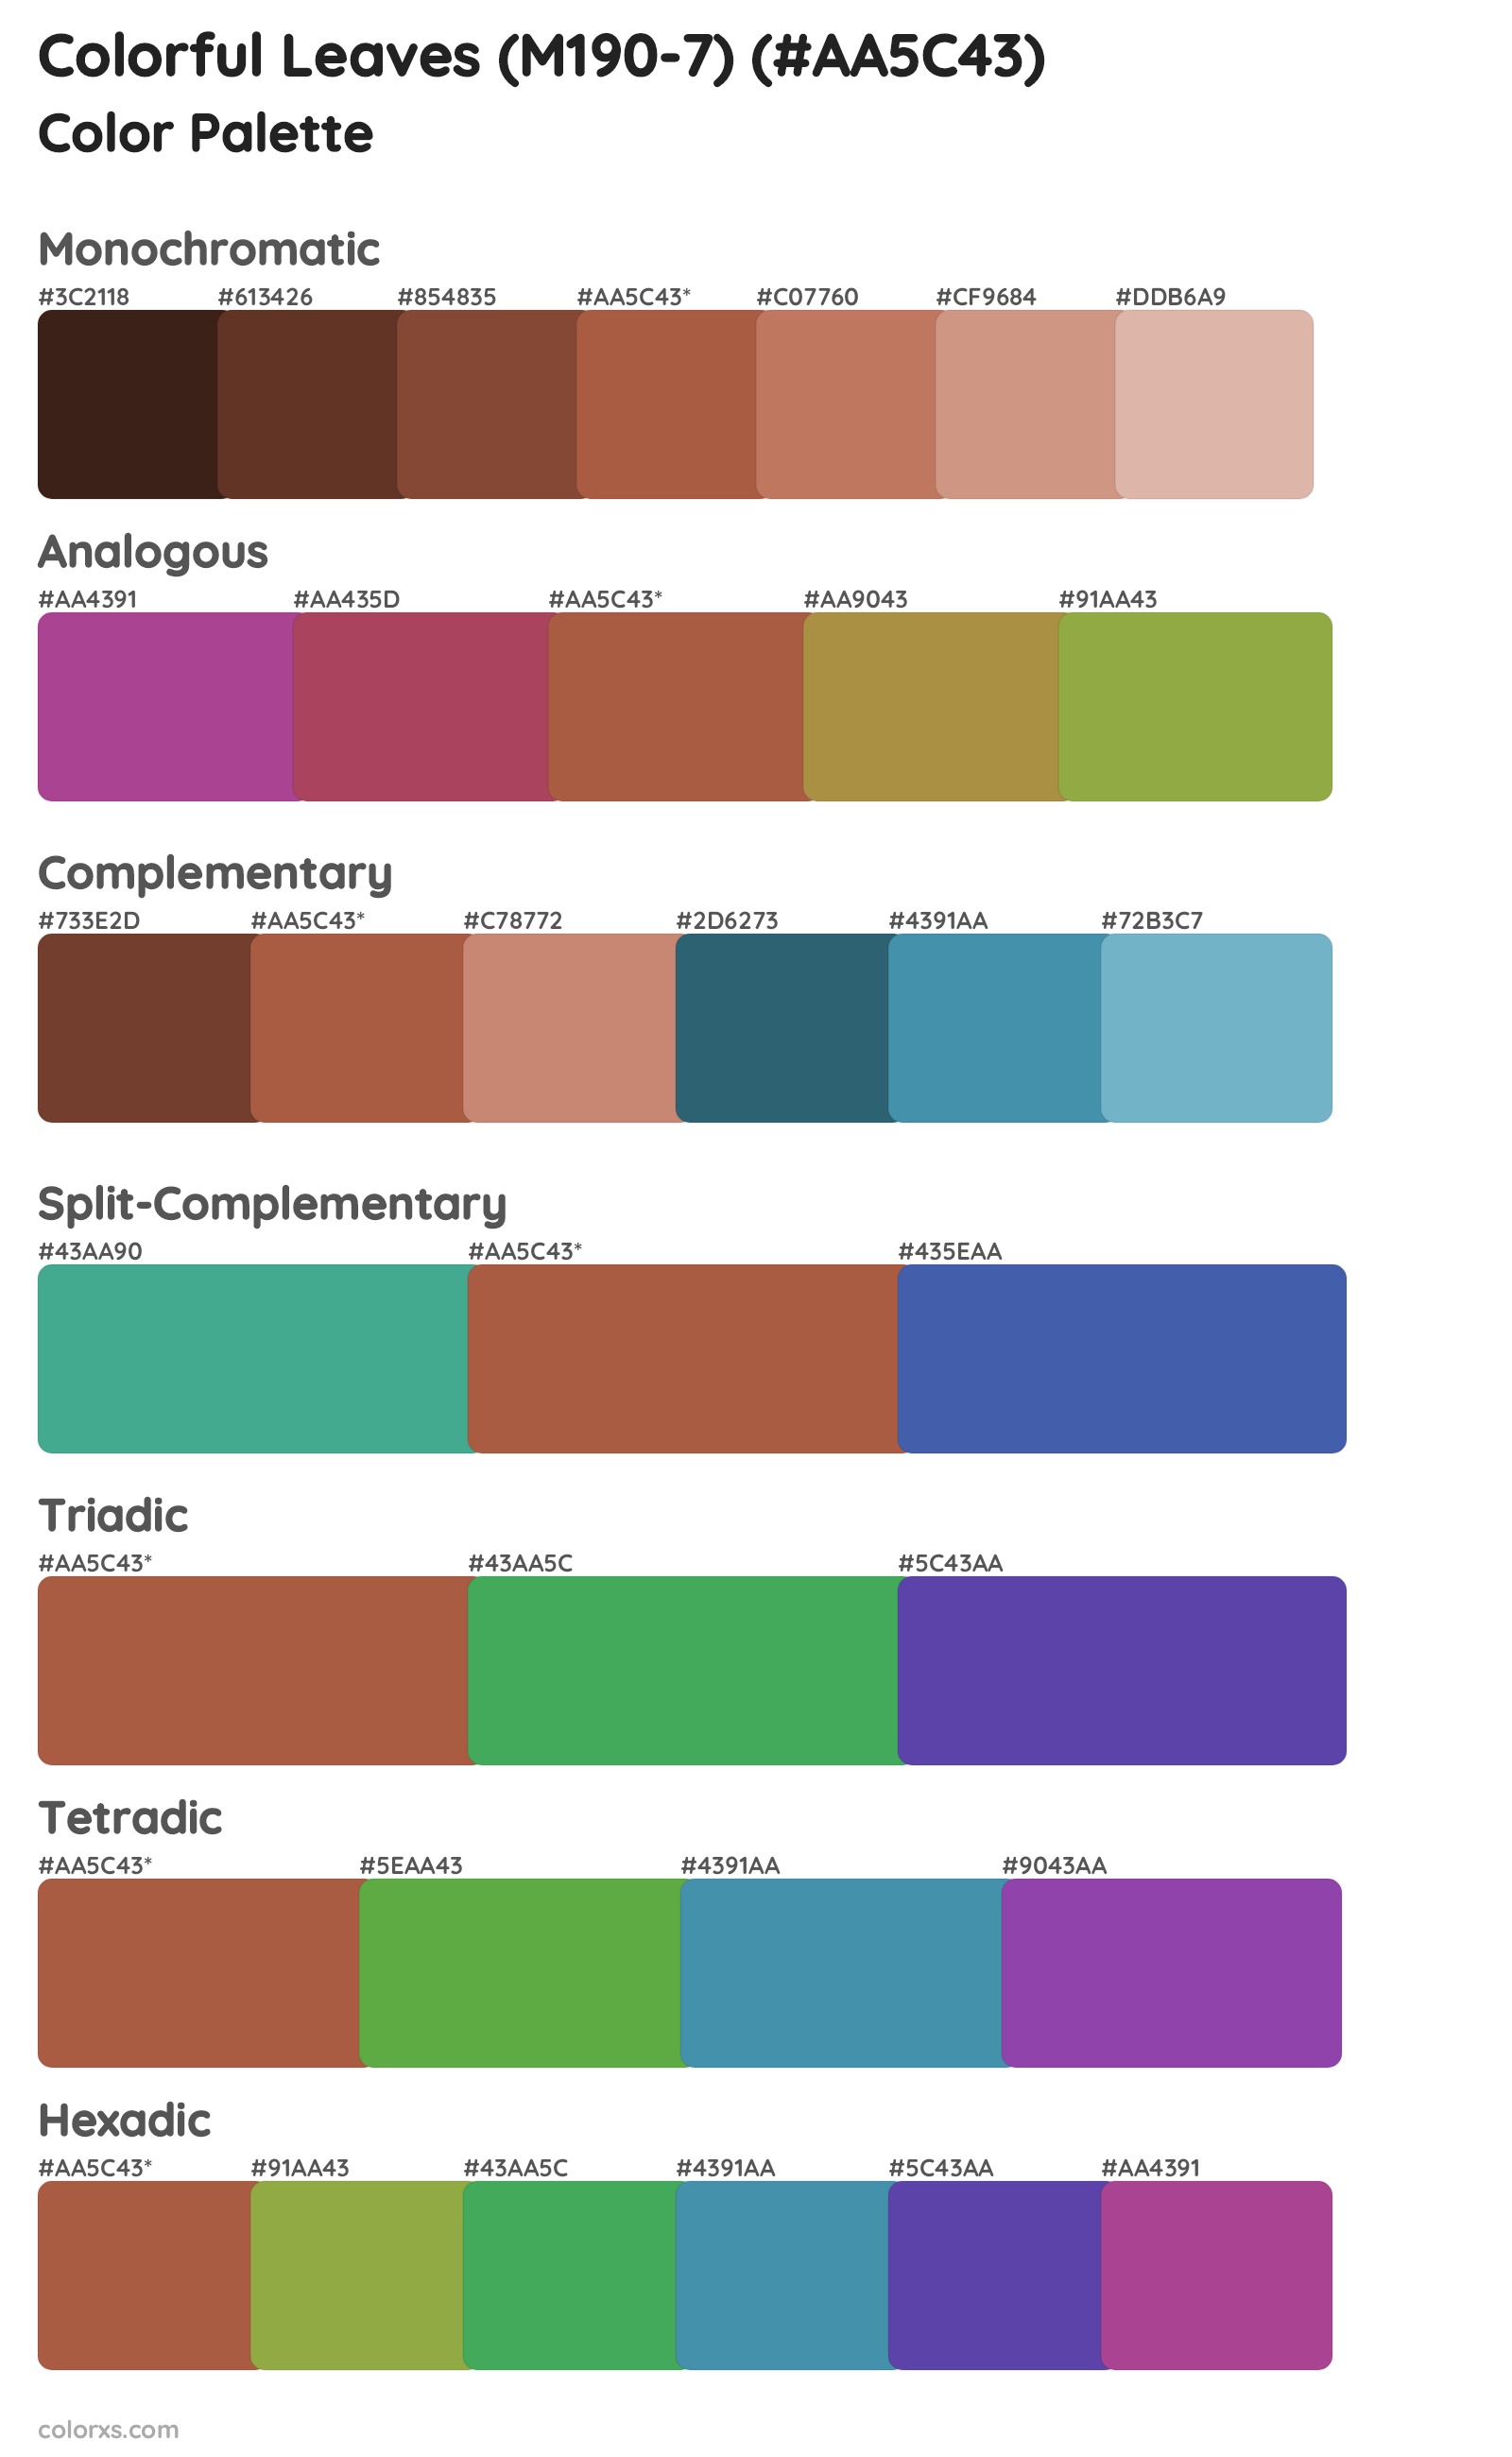 Colorful Leaves (M190-7) Color Scheme Palettes